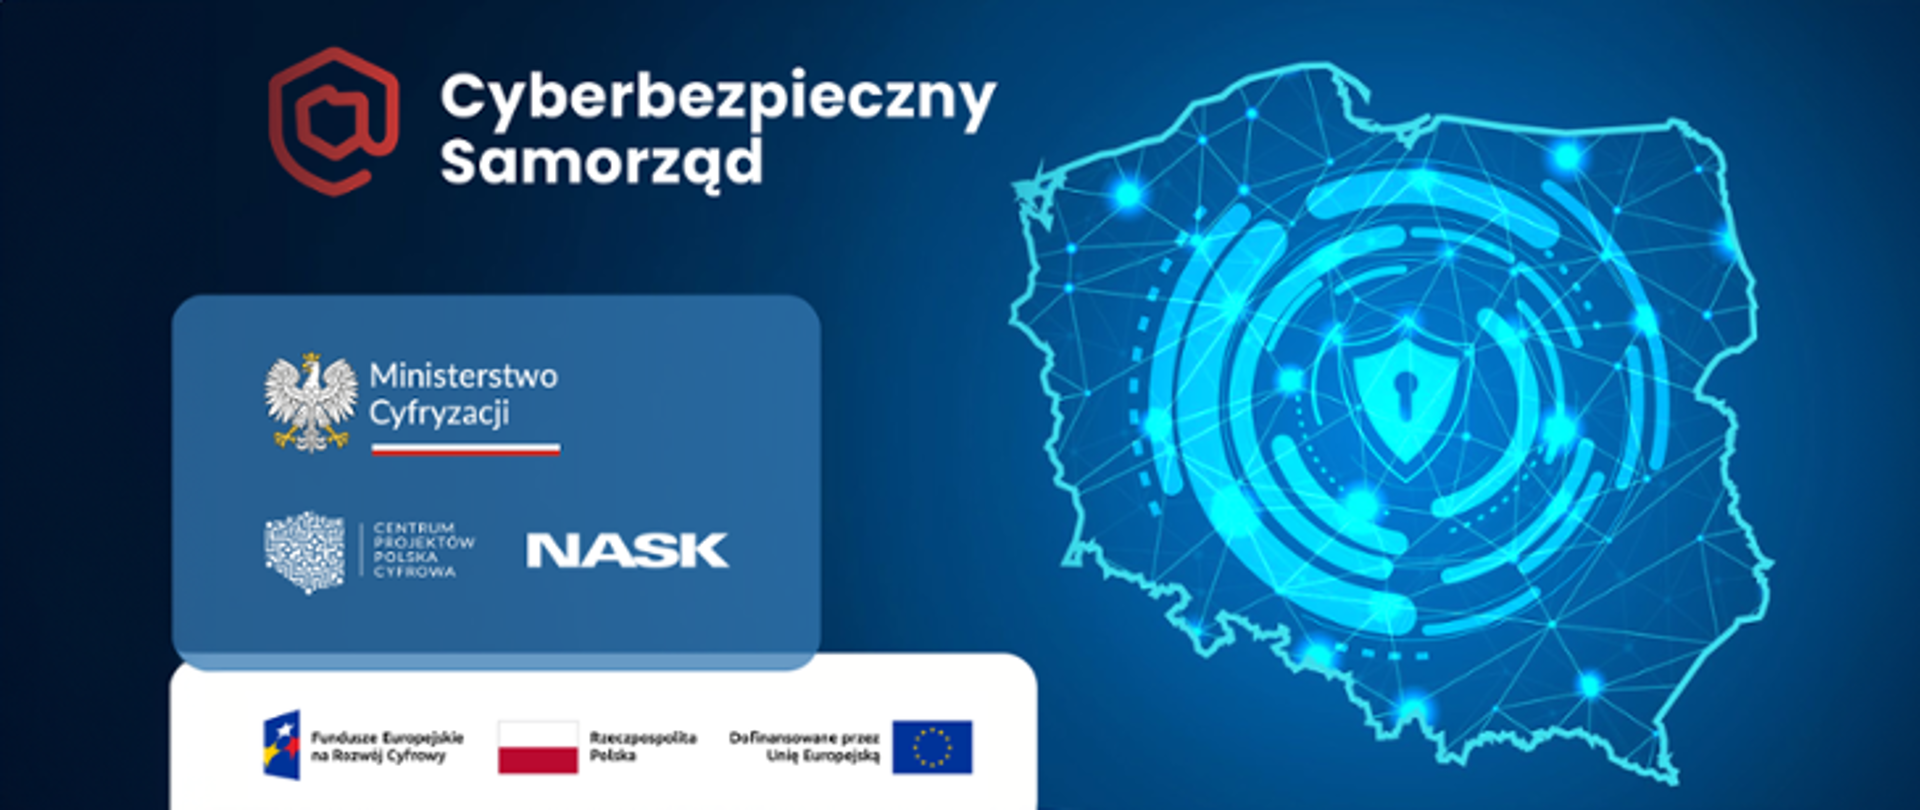 Baner projektu Cyberbezpieczny Samorząd na niebieskim tle po prawej stronie mapa polski z symblem kódki po lewej logo Ministerstwa Cyfryzacji, Centrum Projektów Polska Cyfrowa i NASK